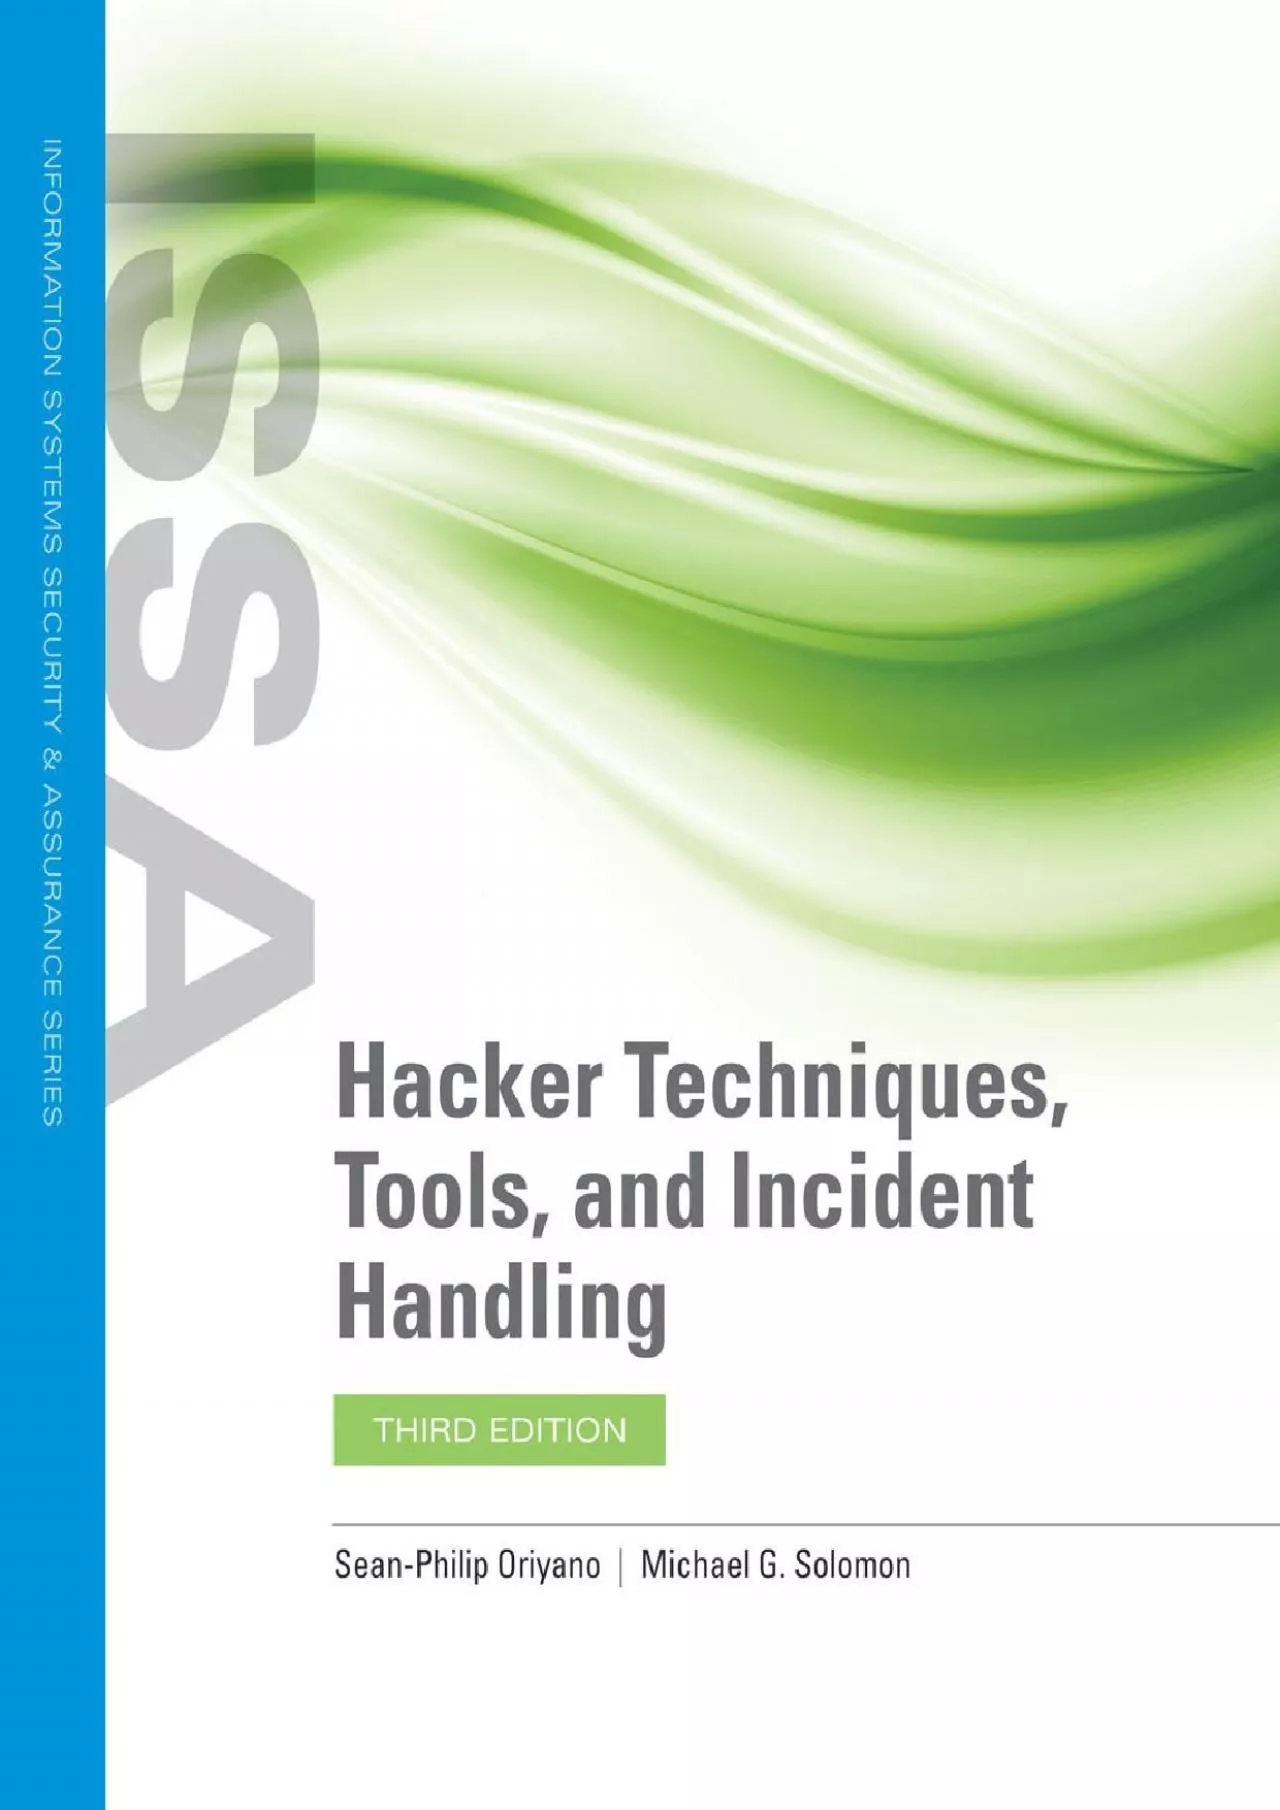 (EBOOK)-Hacker Techniques, Tools, and Incident Handling